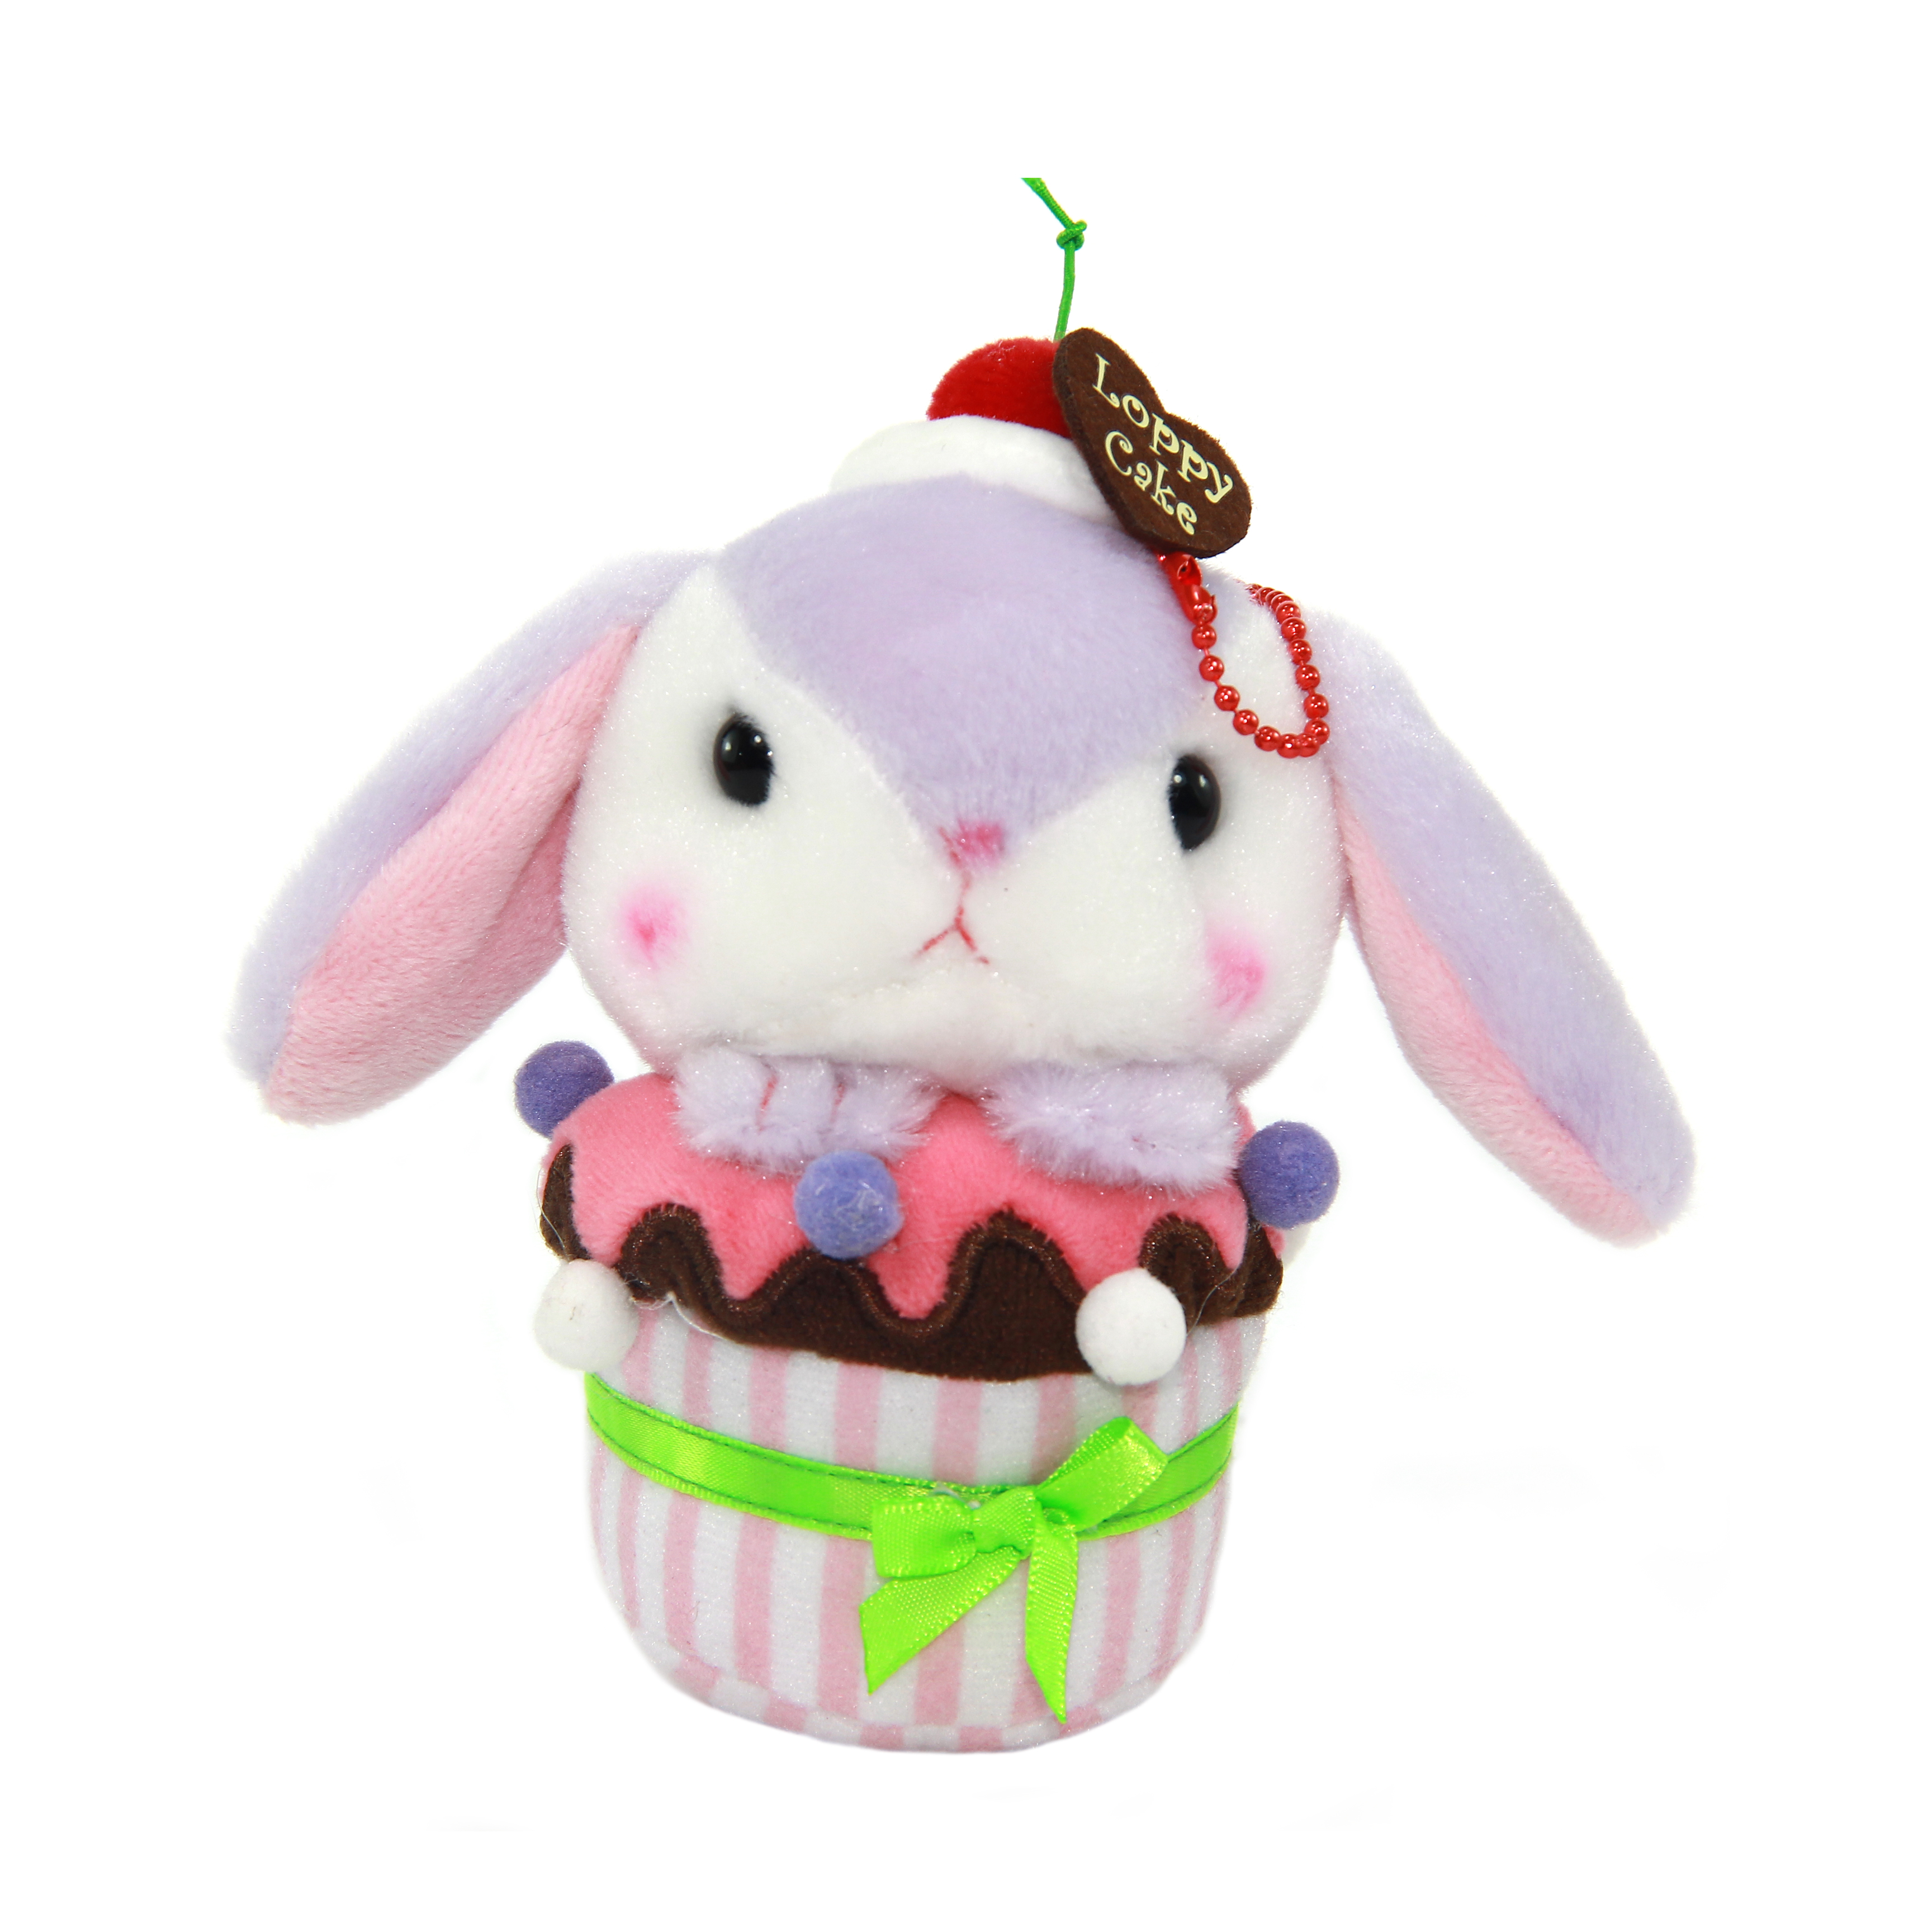 Plush Bunny, Amuse, Pote Usa Loppy, Sumiere-chan, Purple, 5 Inches